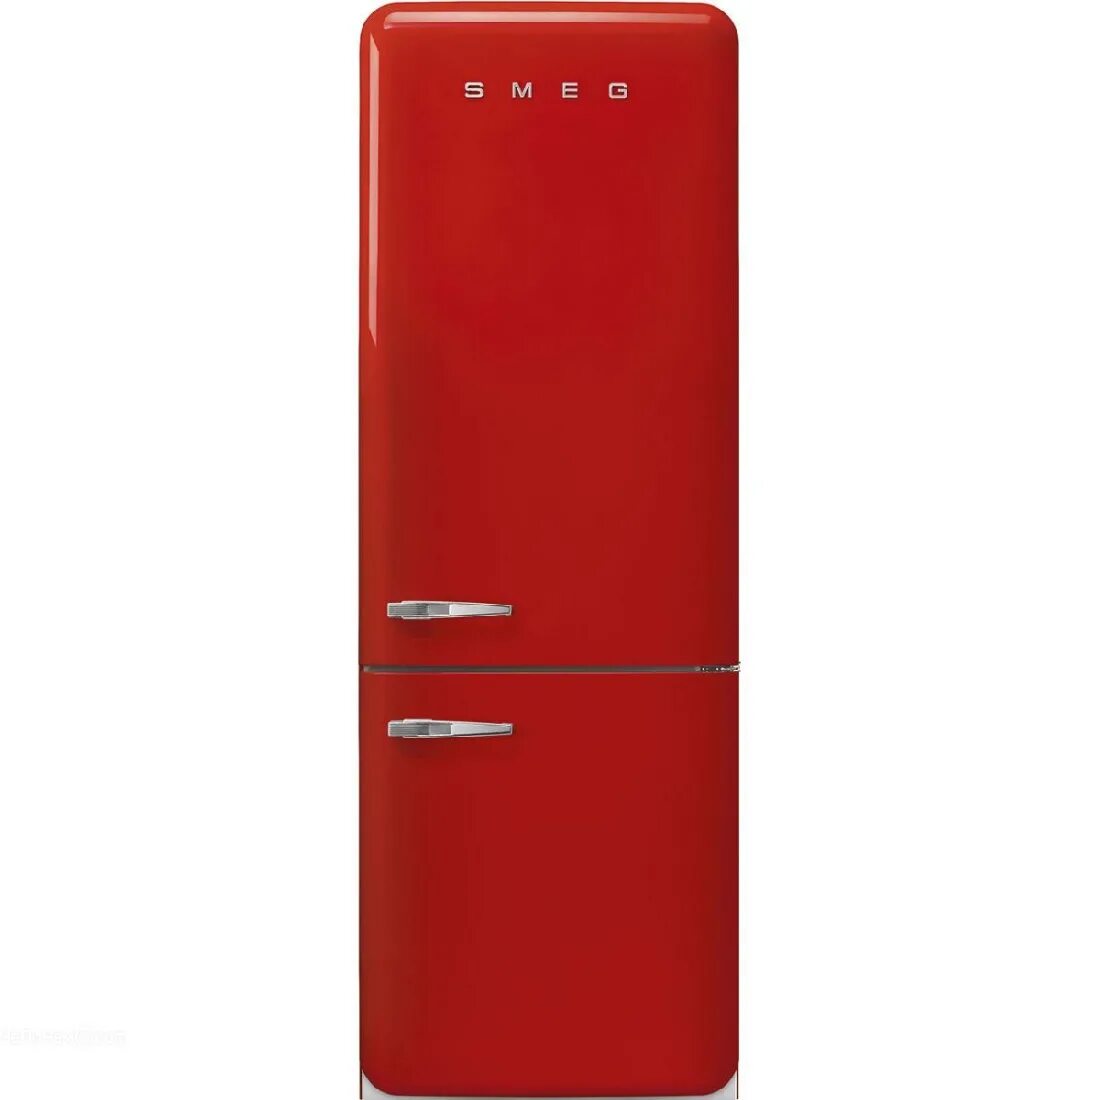 Купить холодильник 5 элемент. Smeg fab32rrd5. Холодильник Smeg fab38rrd5. Холодильник Смег двухдверный. Холодильник Смег красный.